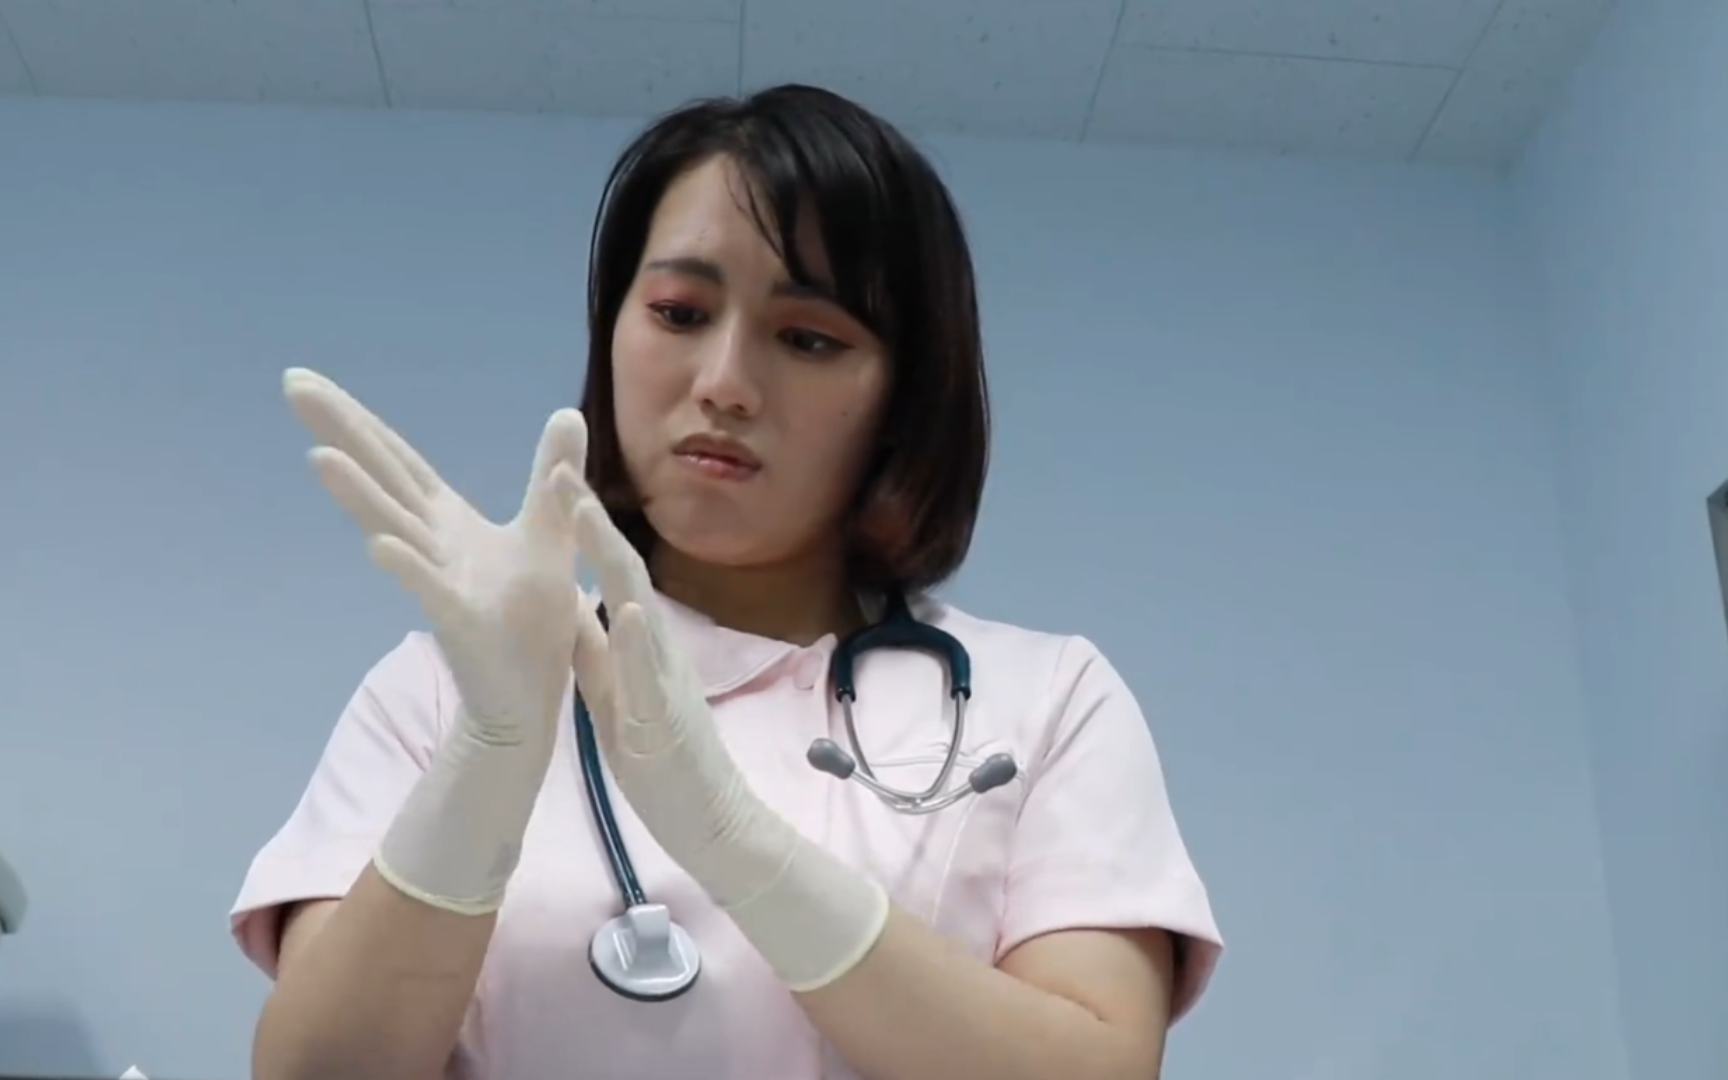 [手术模拟]女医戴乳胶手套绑架你做手术实验